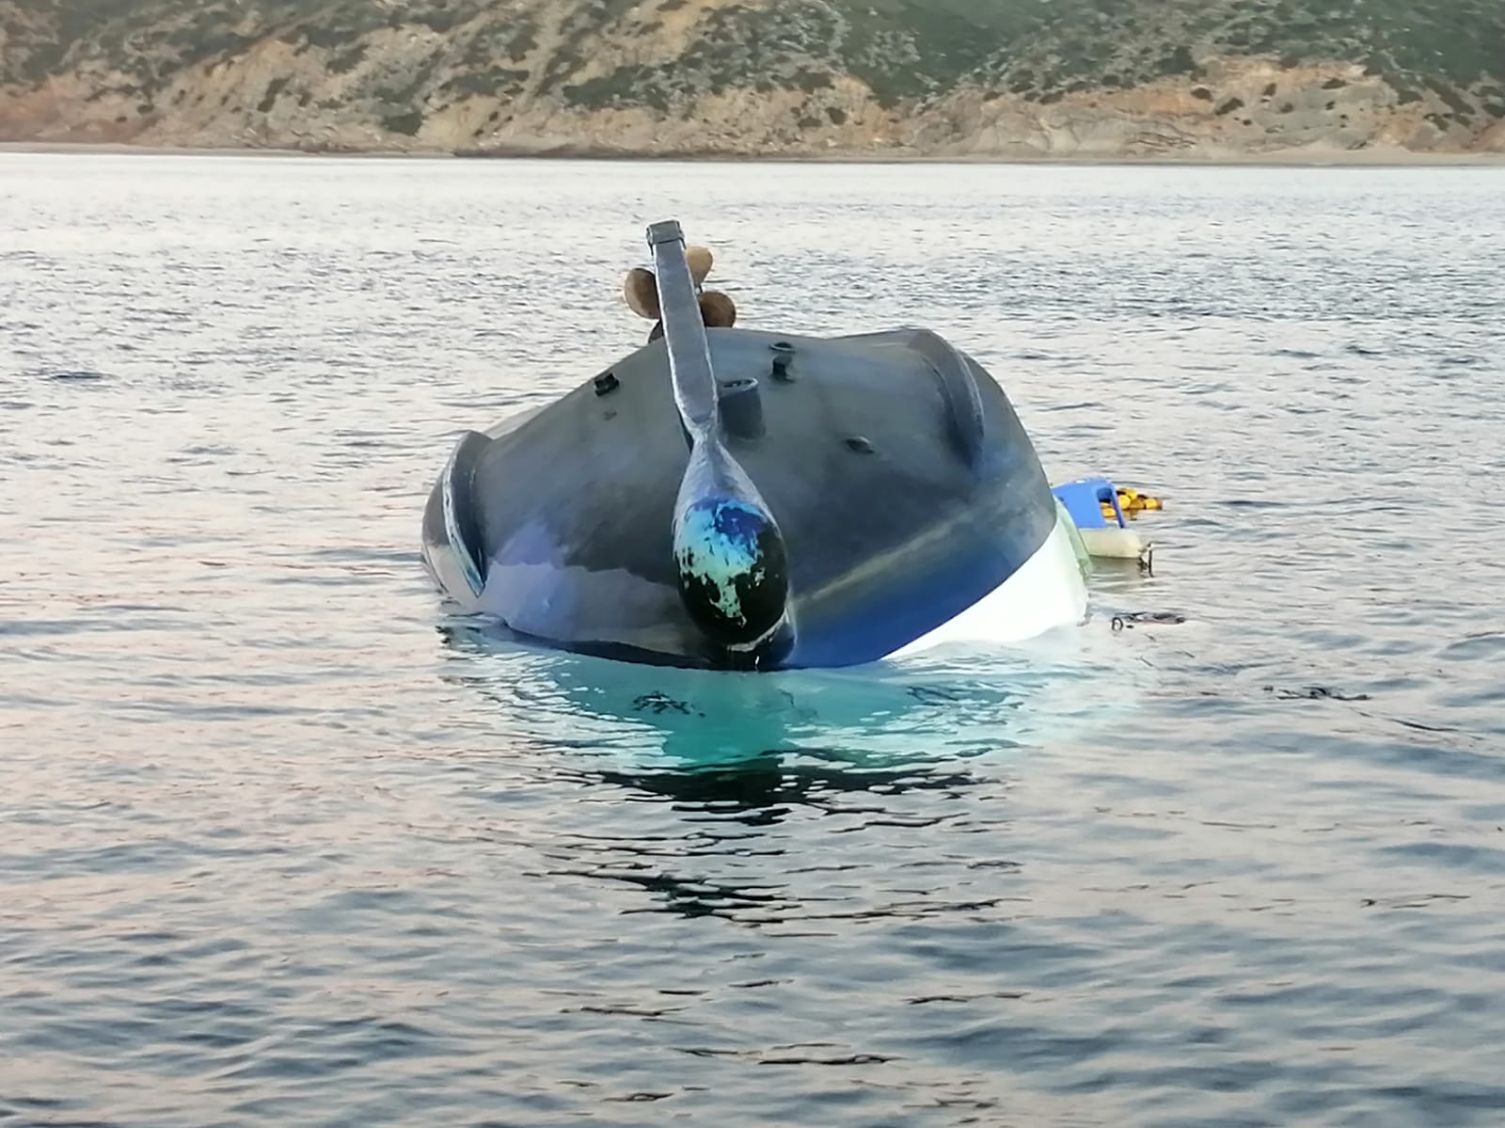 Jaime perdeu tudo “em segundos” em acidente marítimo e irmã pede ajuda